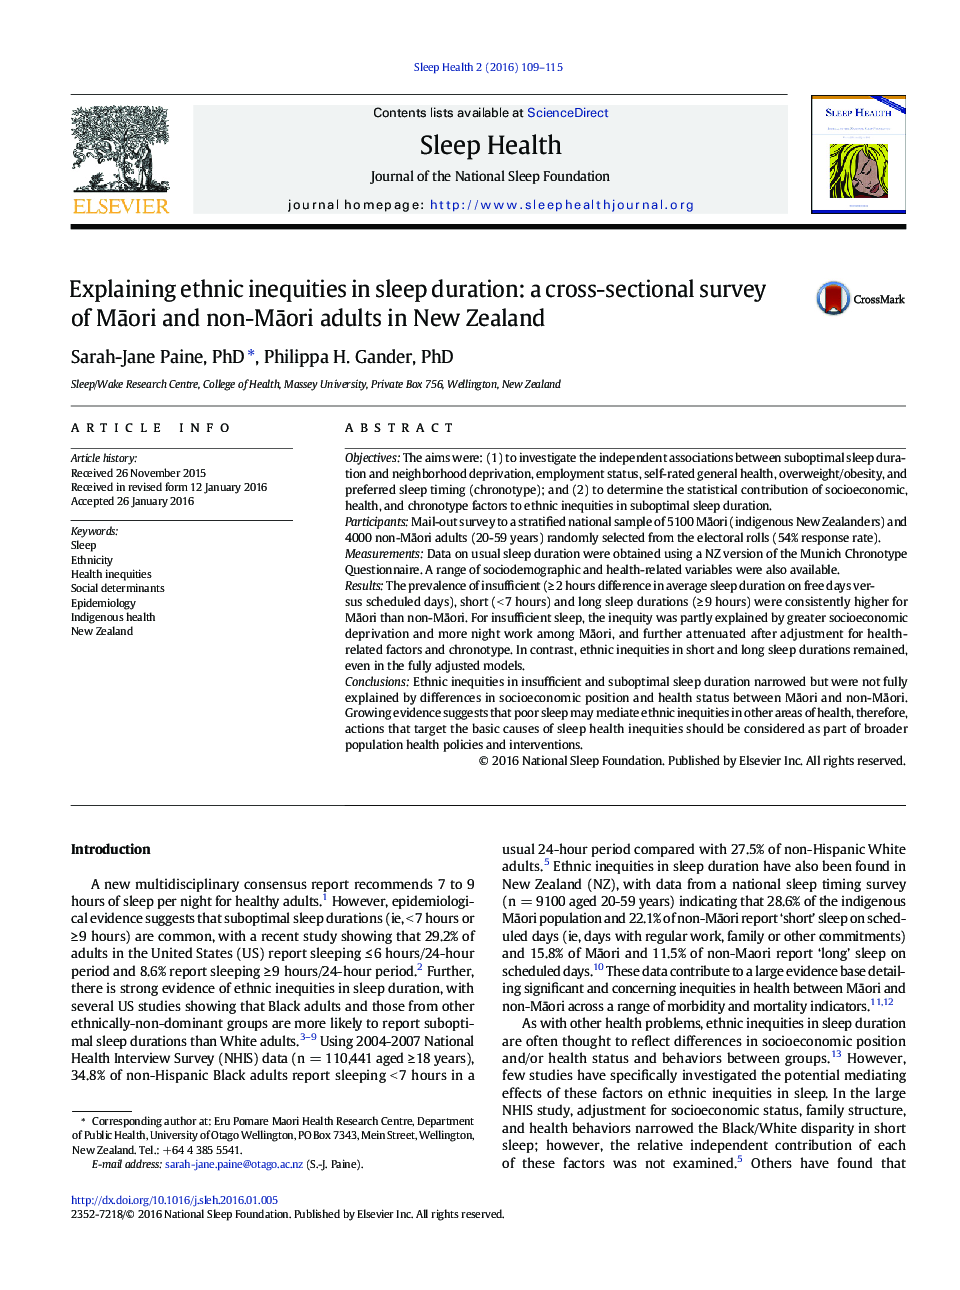 توضیح نابرابری های قومی در طول مدت خواب: یک بررسی مقطعی از بزرگسالان مائوری و غیرمائوری در نیوزیلند